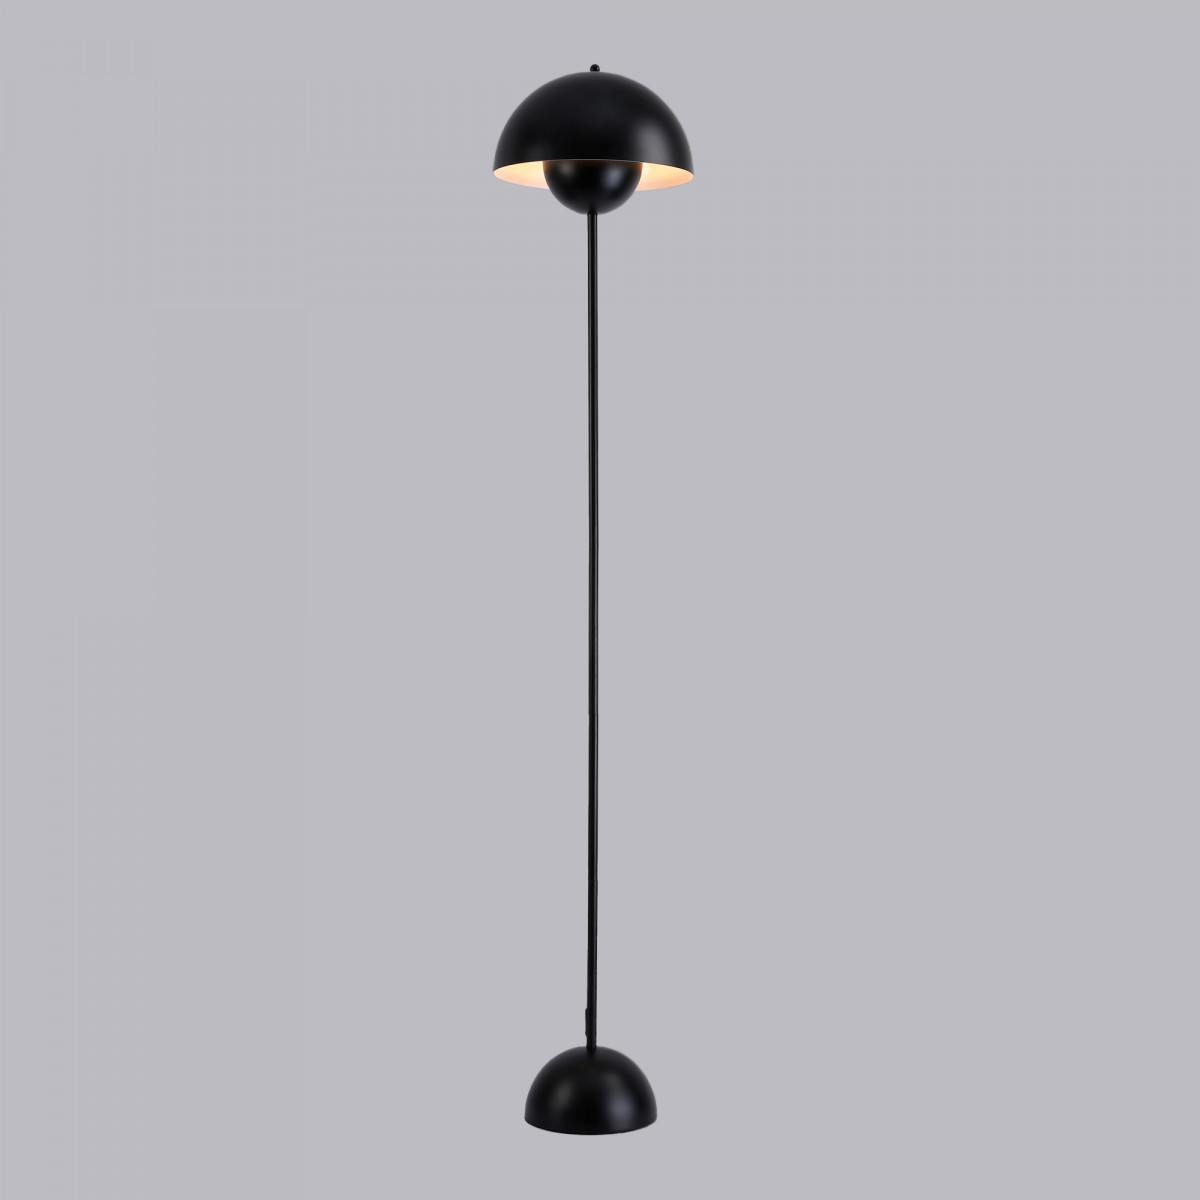 Stehleuchte „Shapó“ / Inspiration „Flowerpot“ - E27 Stehlampe, Sofa, Leselampe - in Schwarz